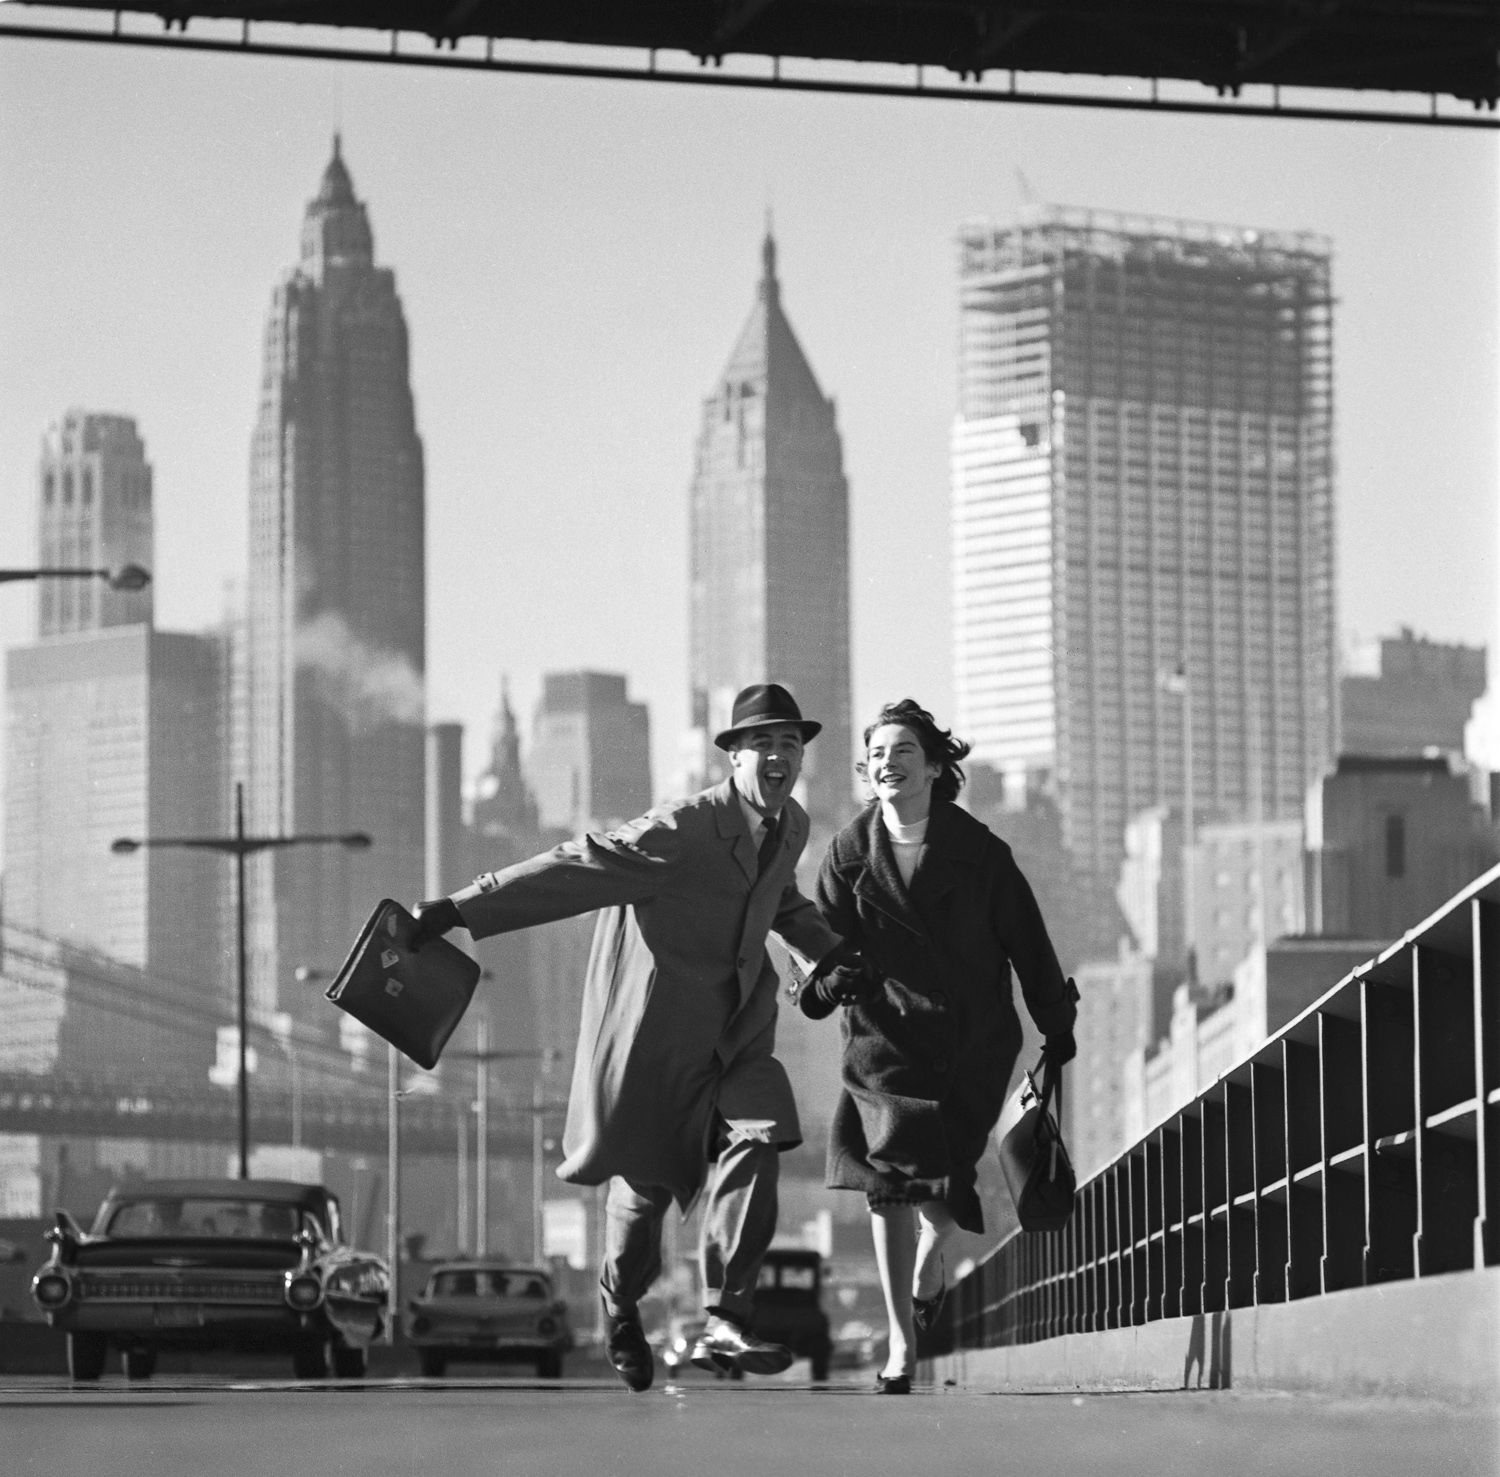 One New York Night [1935]